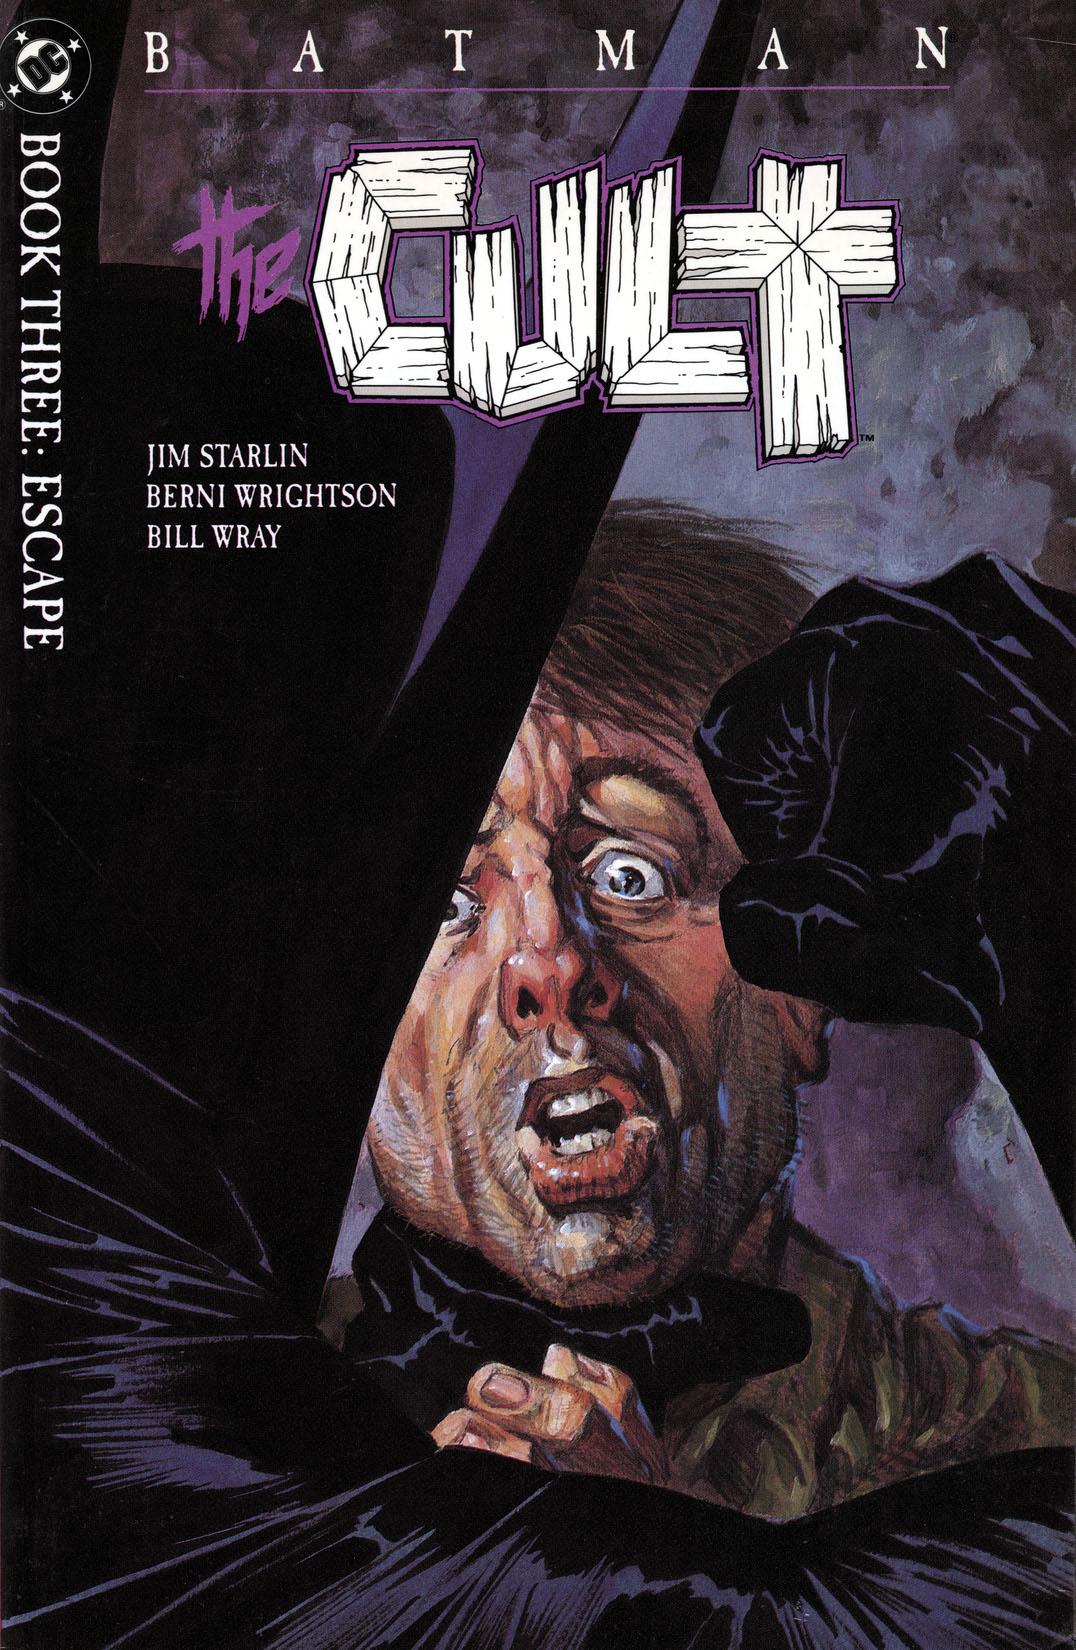 Batman: The Cult #3 preview images